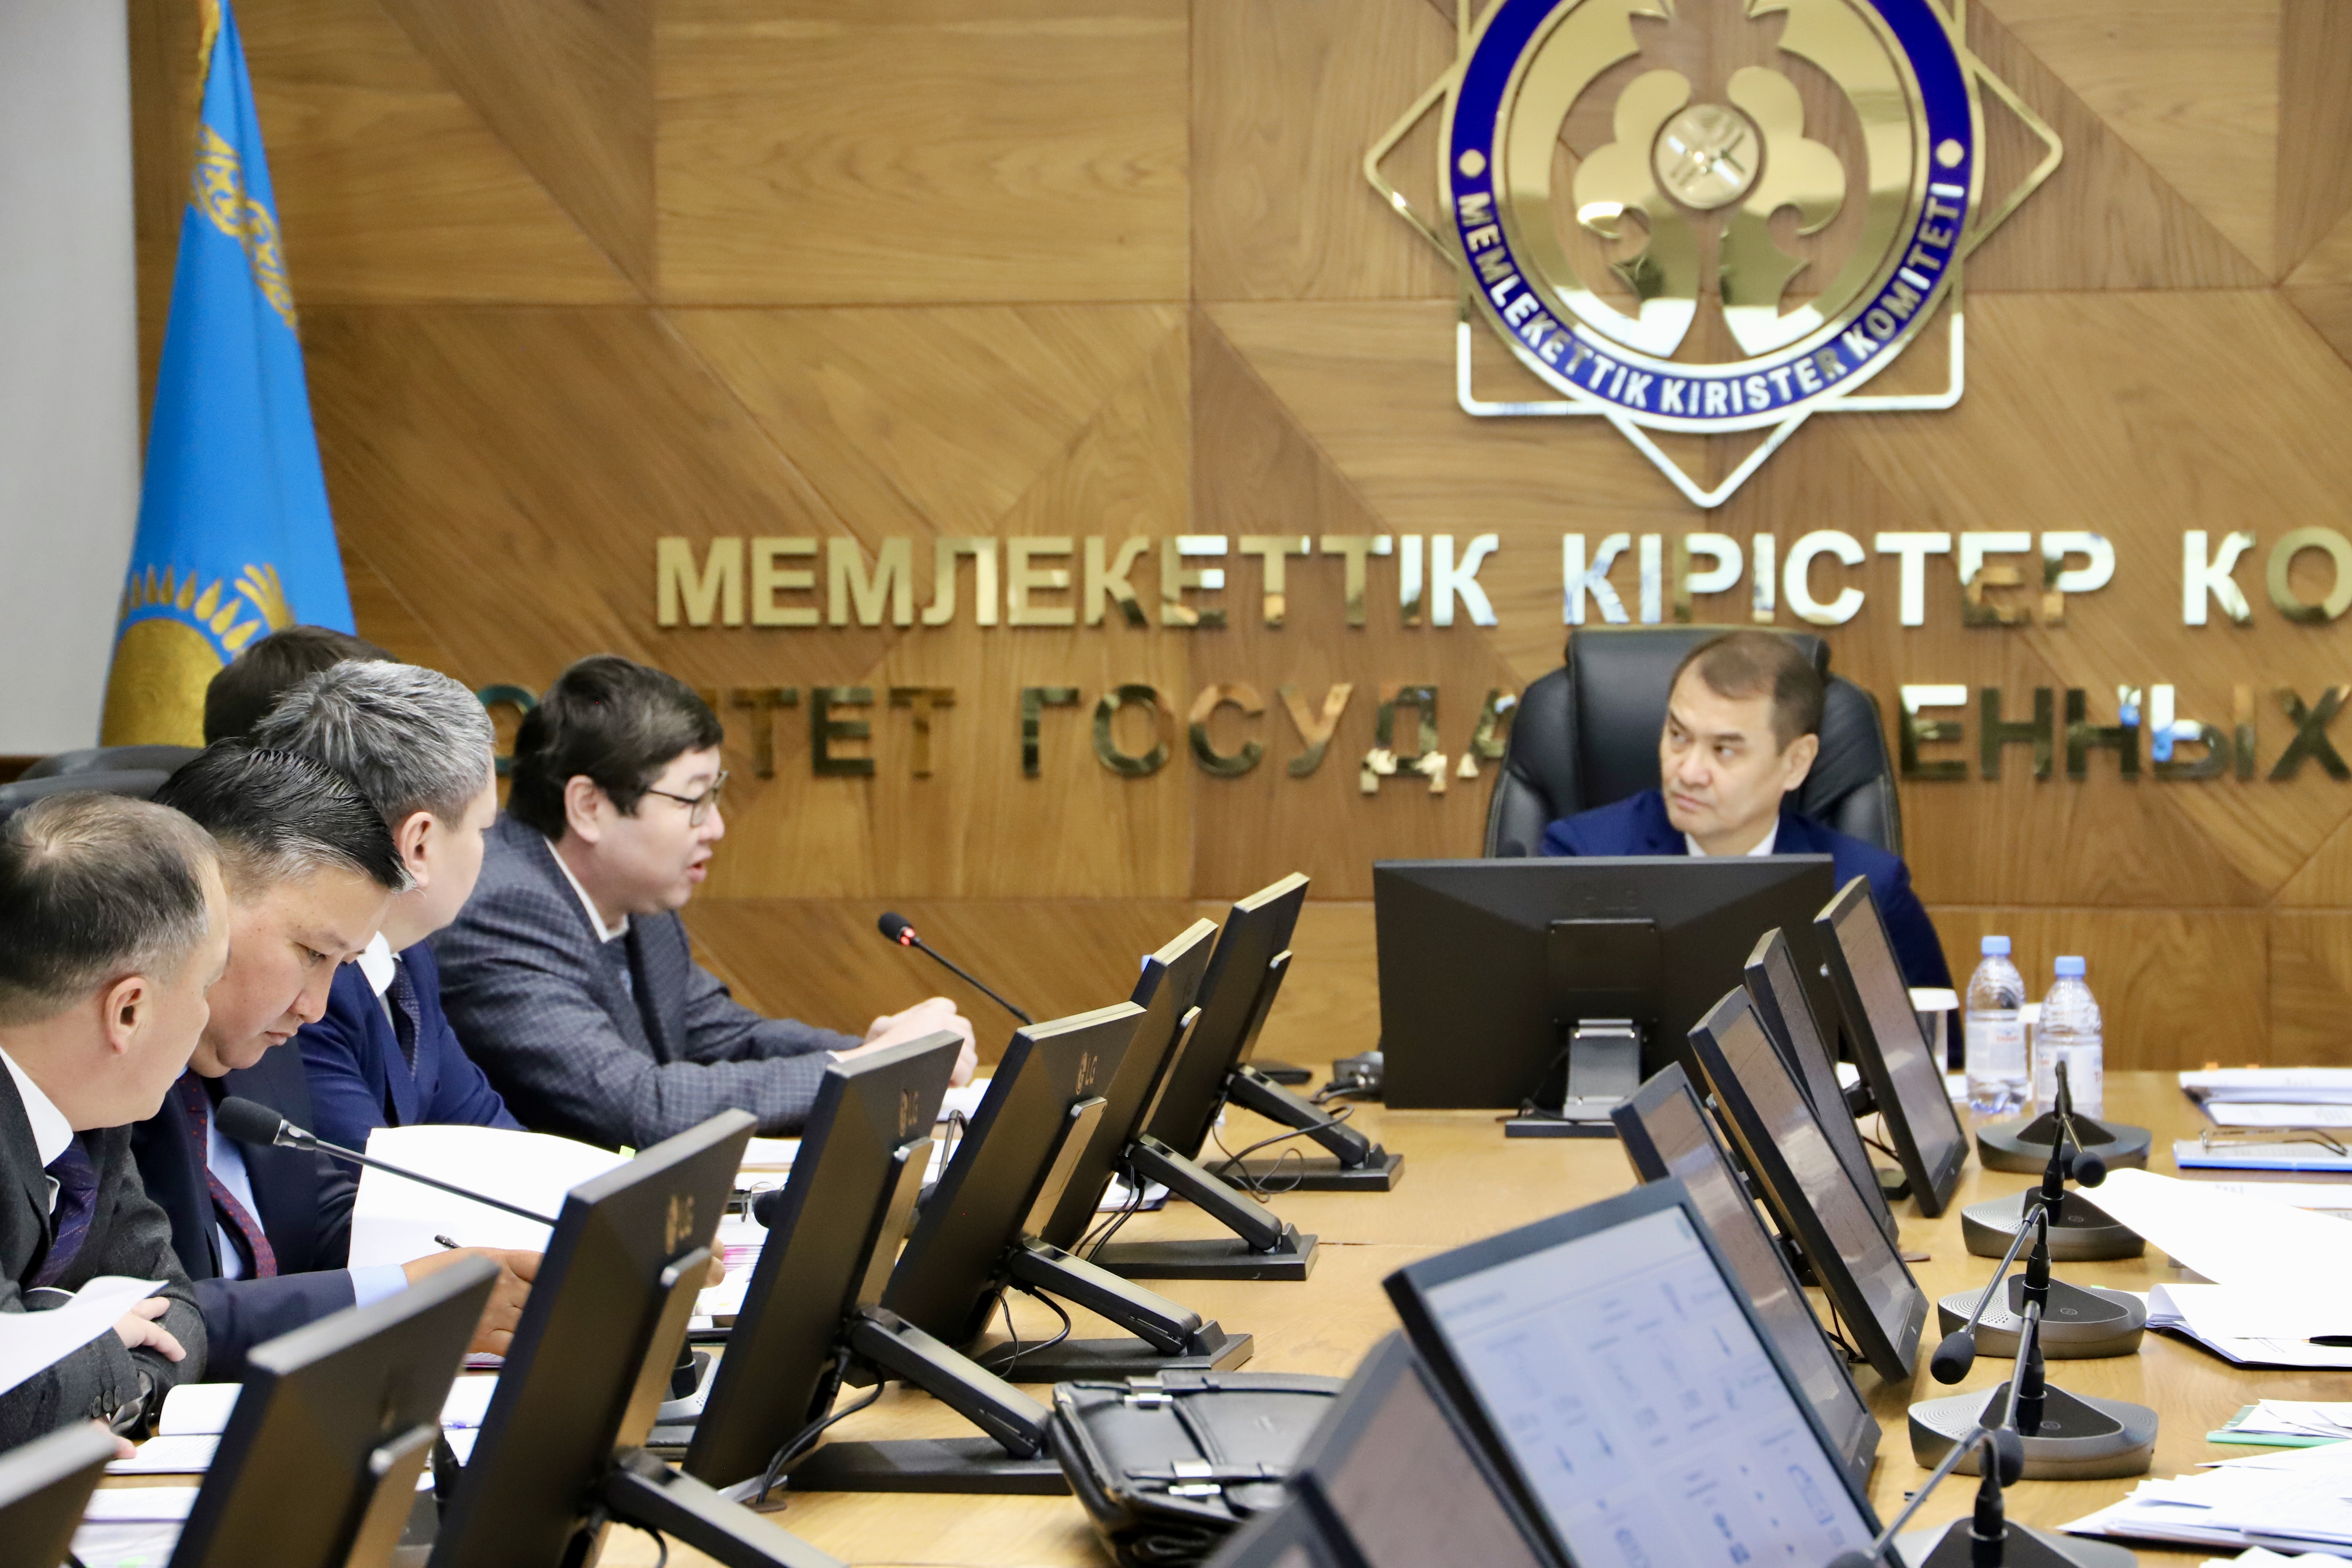 Сегодня в Комитете внутреннего государственного аудита Министерства финансов Республики Казахстан на тему «Итоги деятельности Комитета внутреннего государственного аудита МФ РК за 2022 год» состоялось расширенное заседание с участием руководителей территориальных департаментов